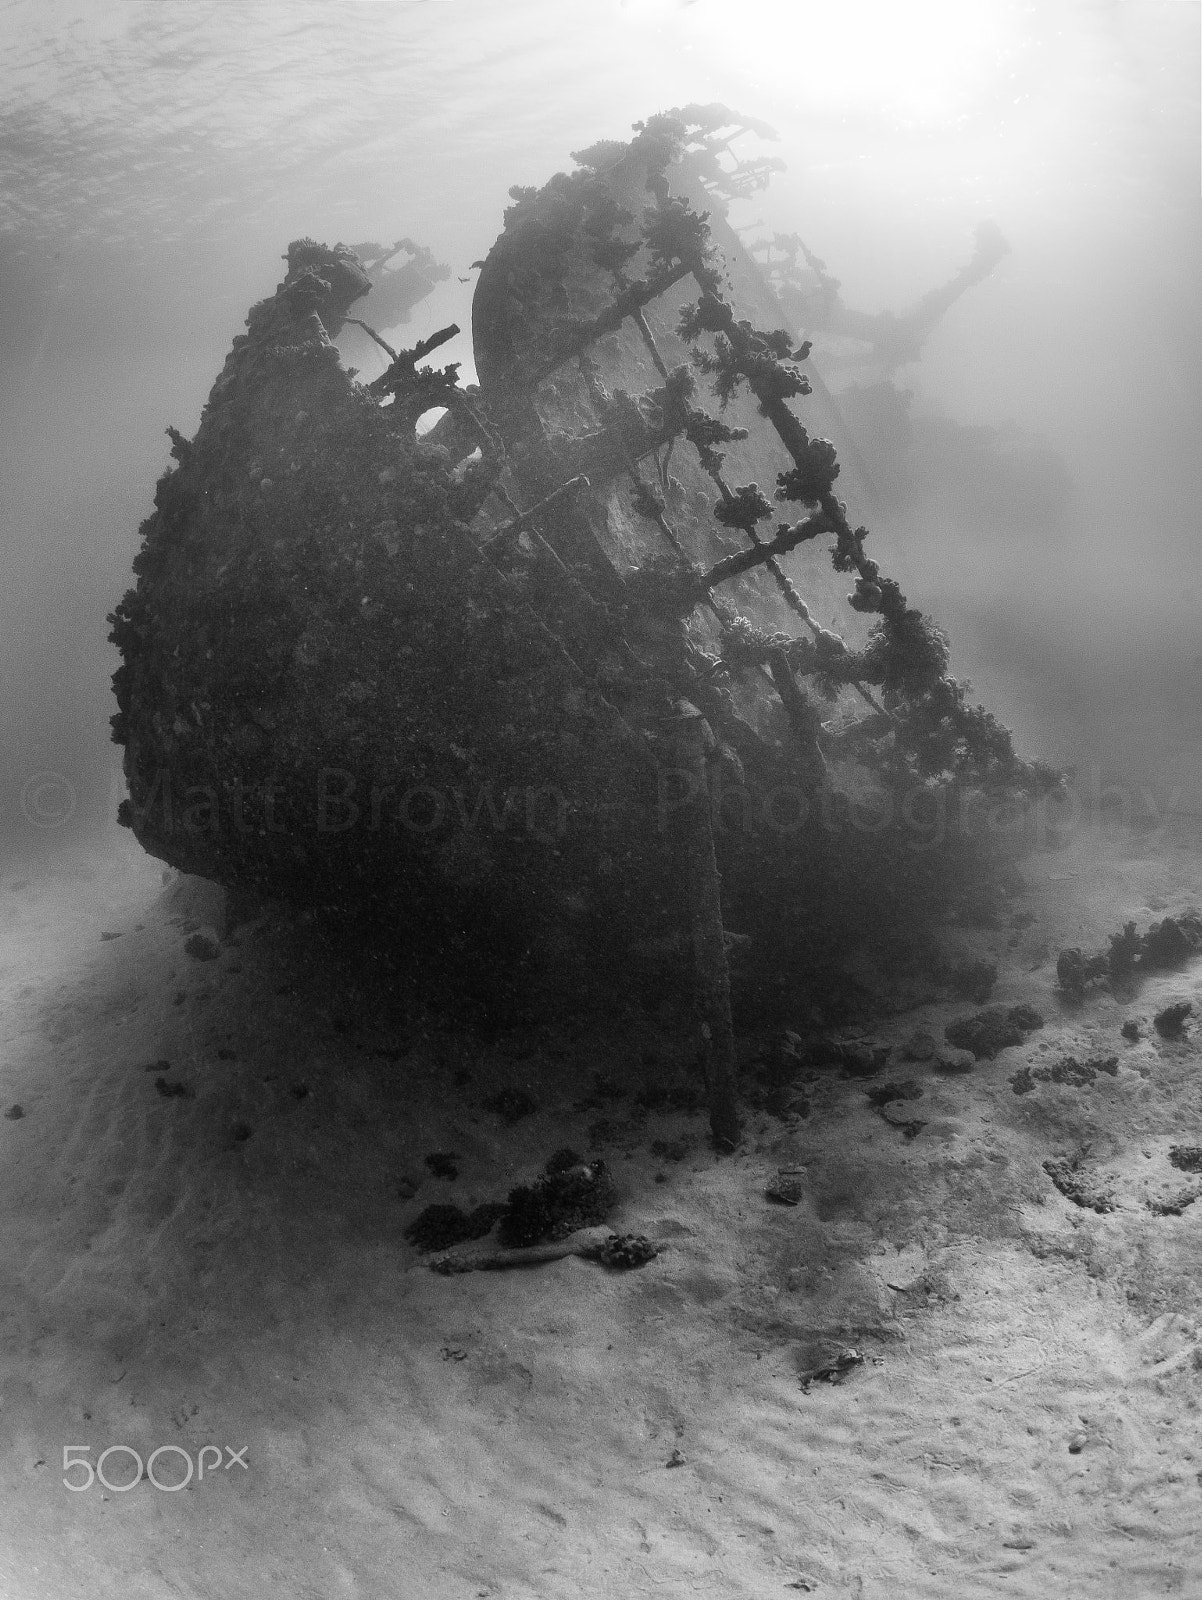 Panasonic Lumix DMC-GX7 + LUMIX G FISHEYE 8/F3.5 sample photo. Ship wreck photography